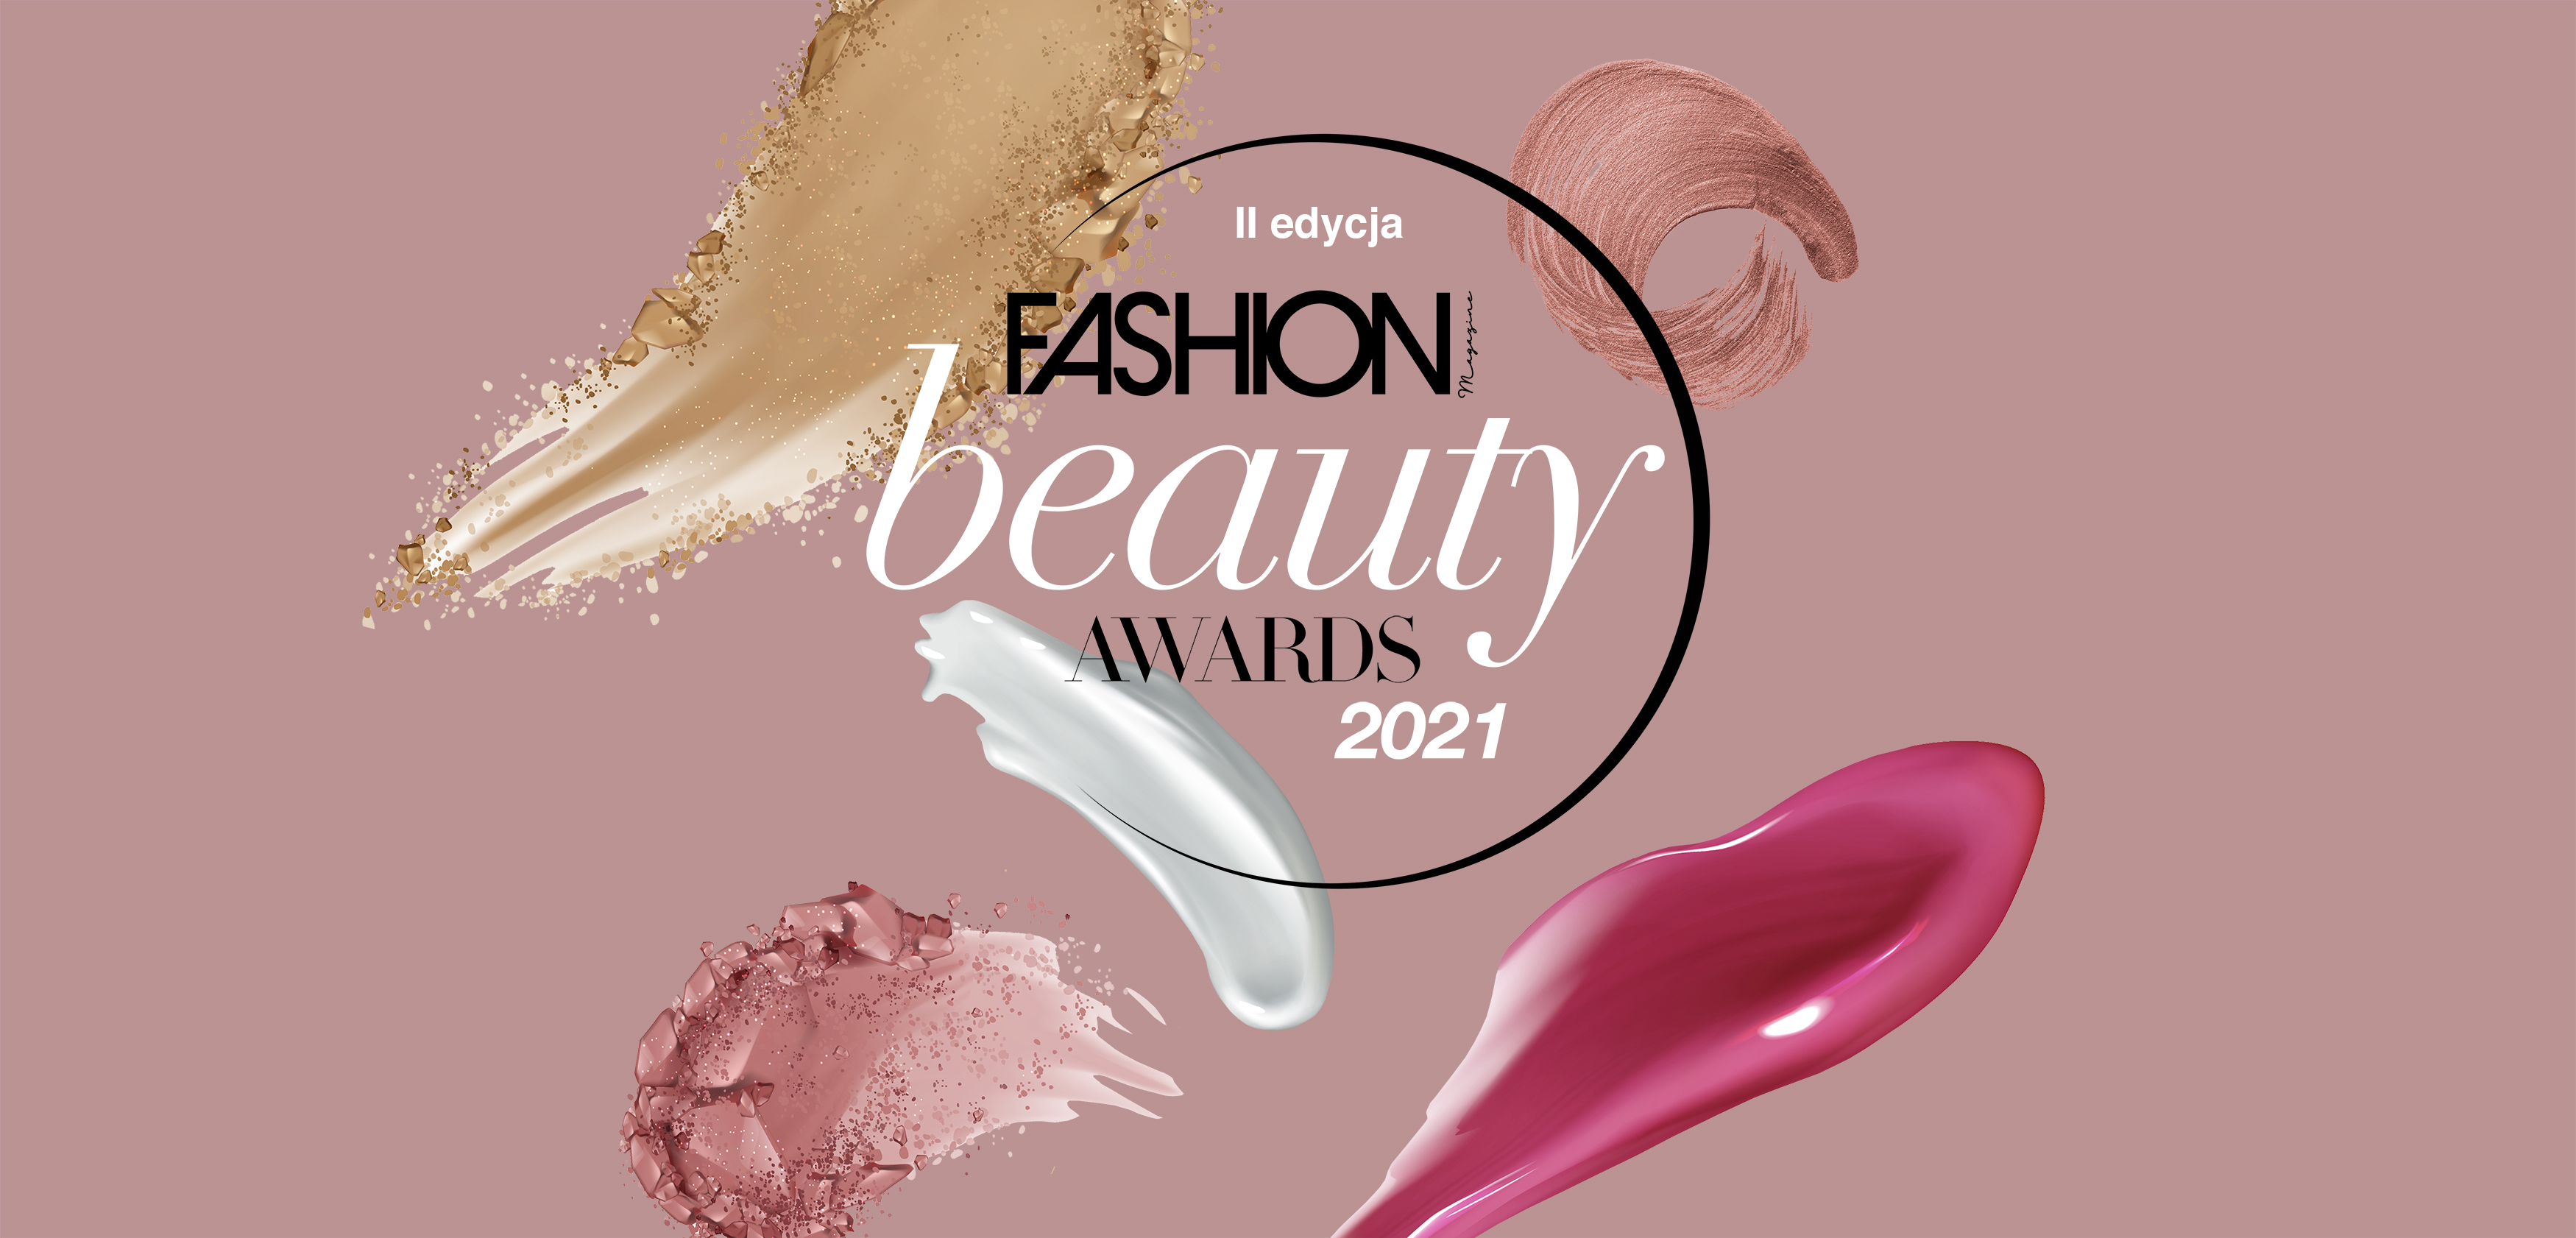 Fashion Magazine Beauty Awards 2021: zgłoś swoją markę